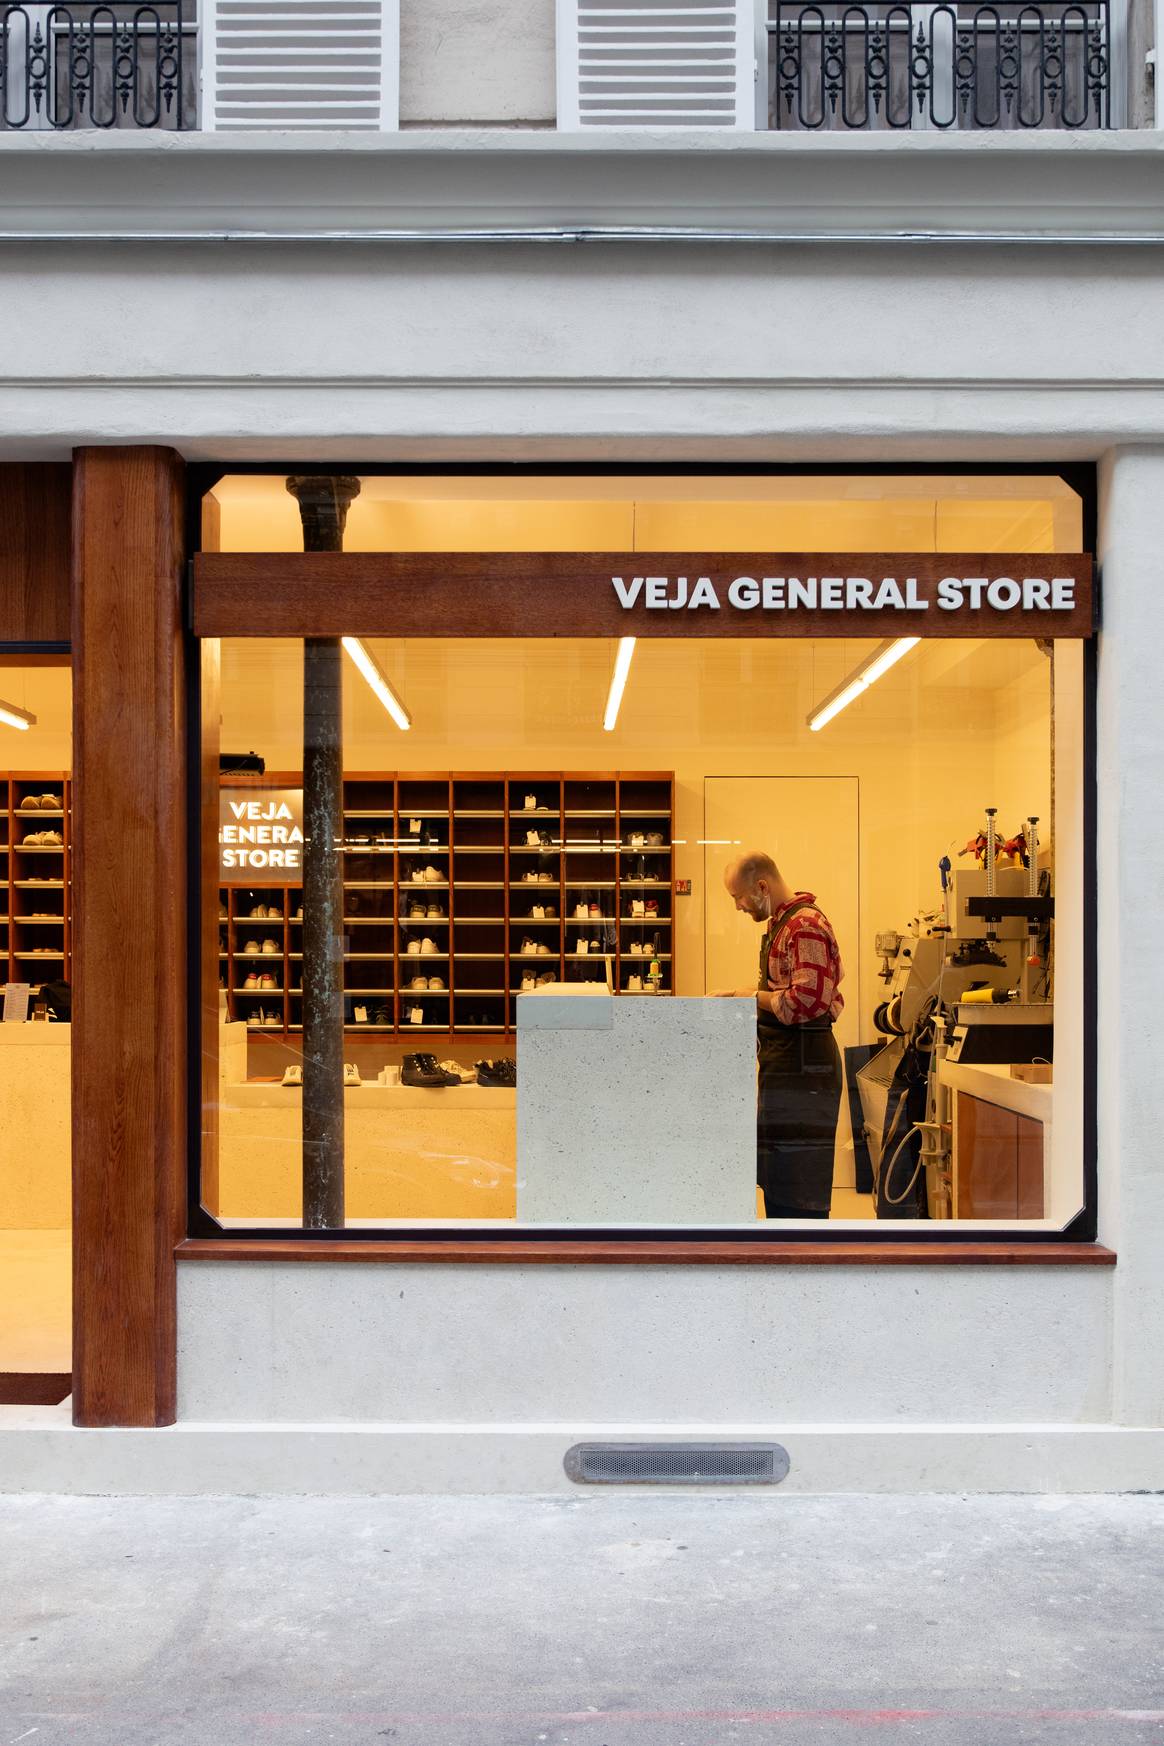 Veja ‘General Store’ in Paris